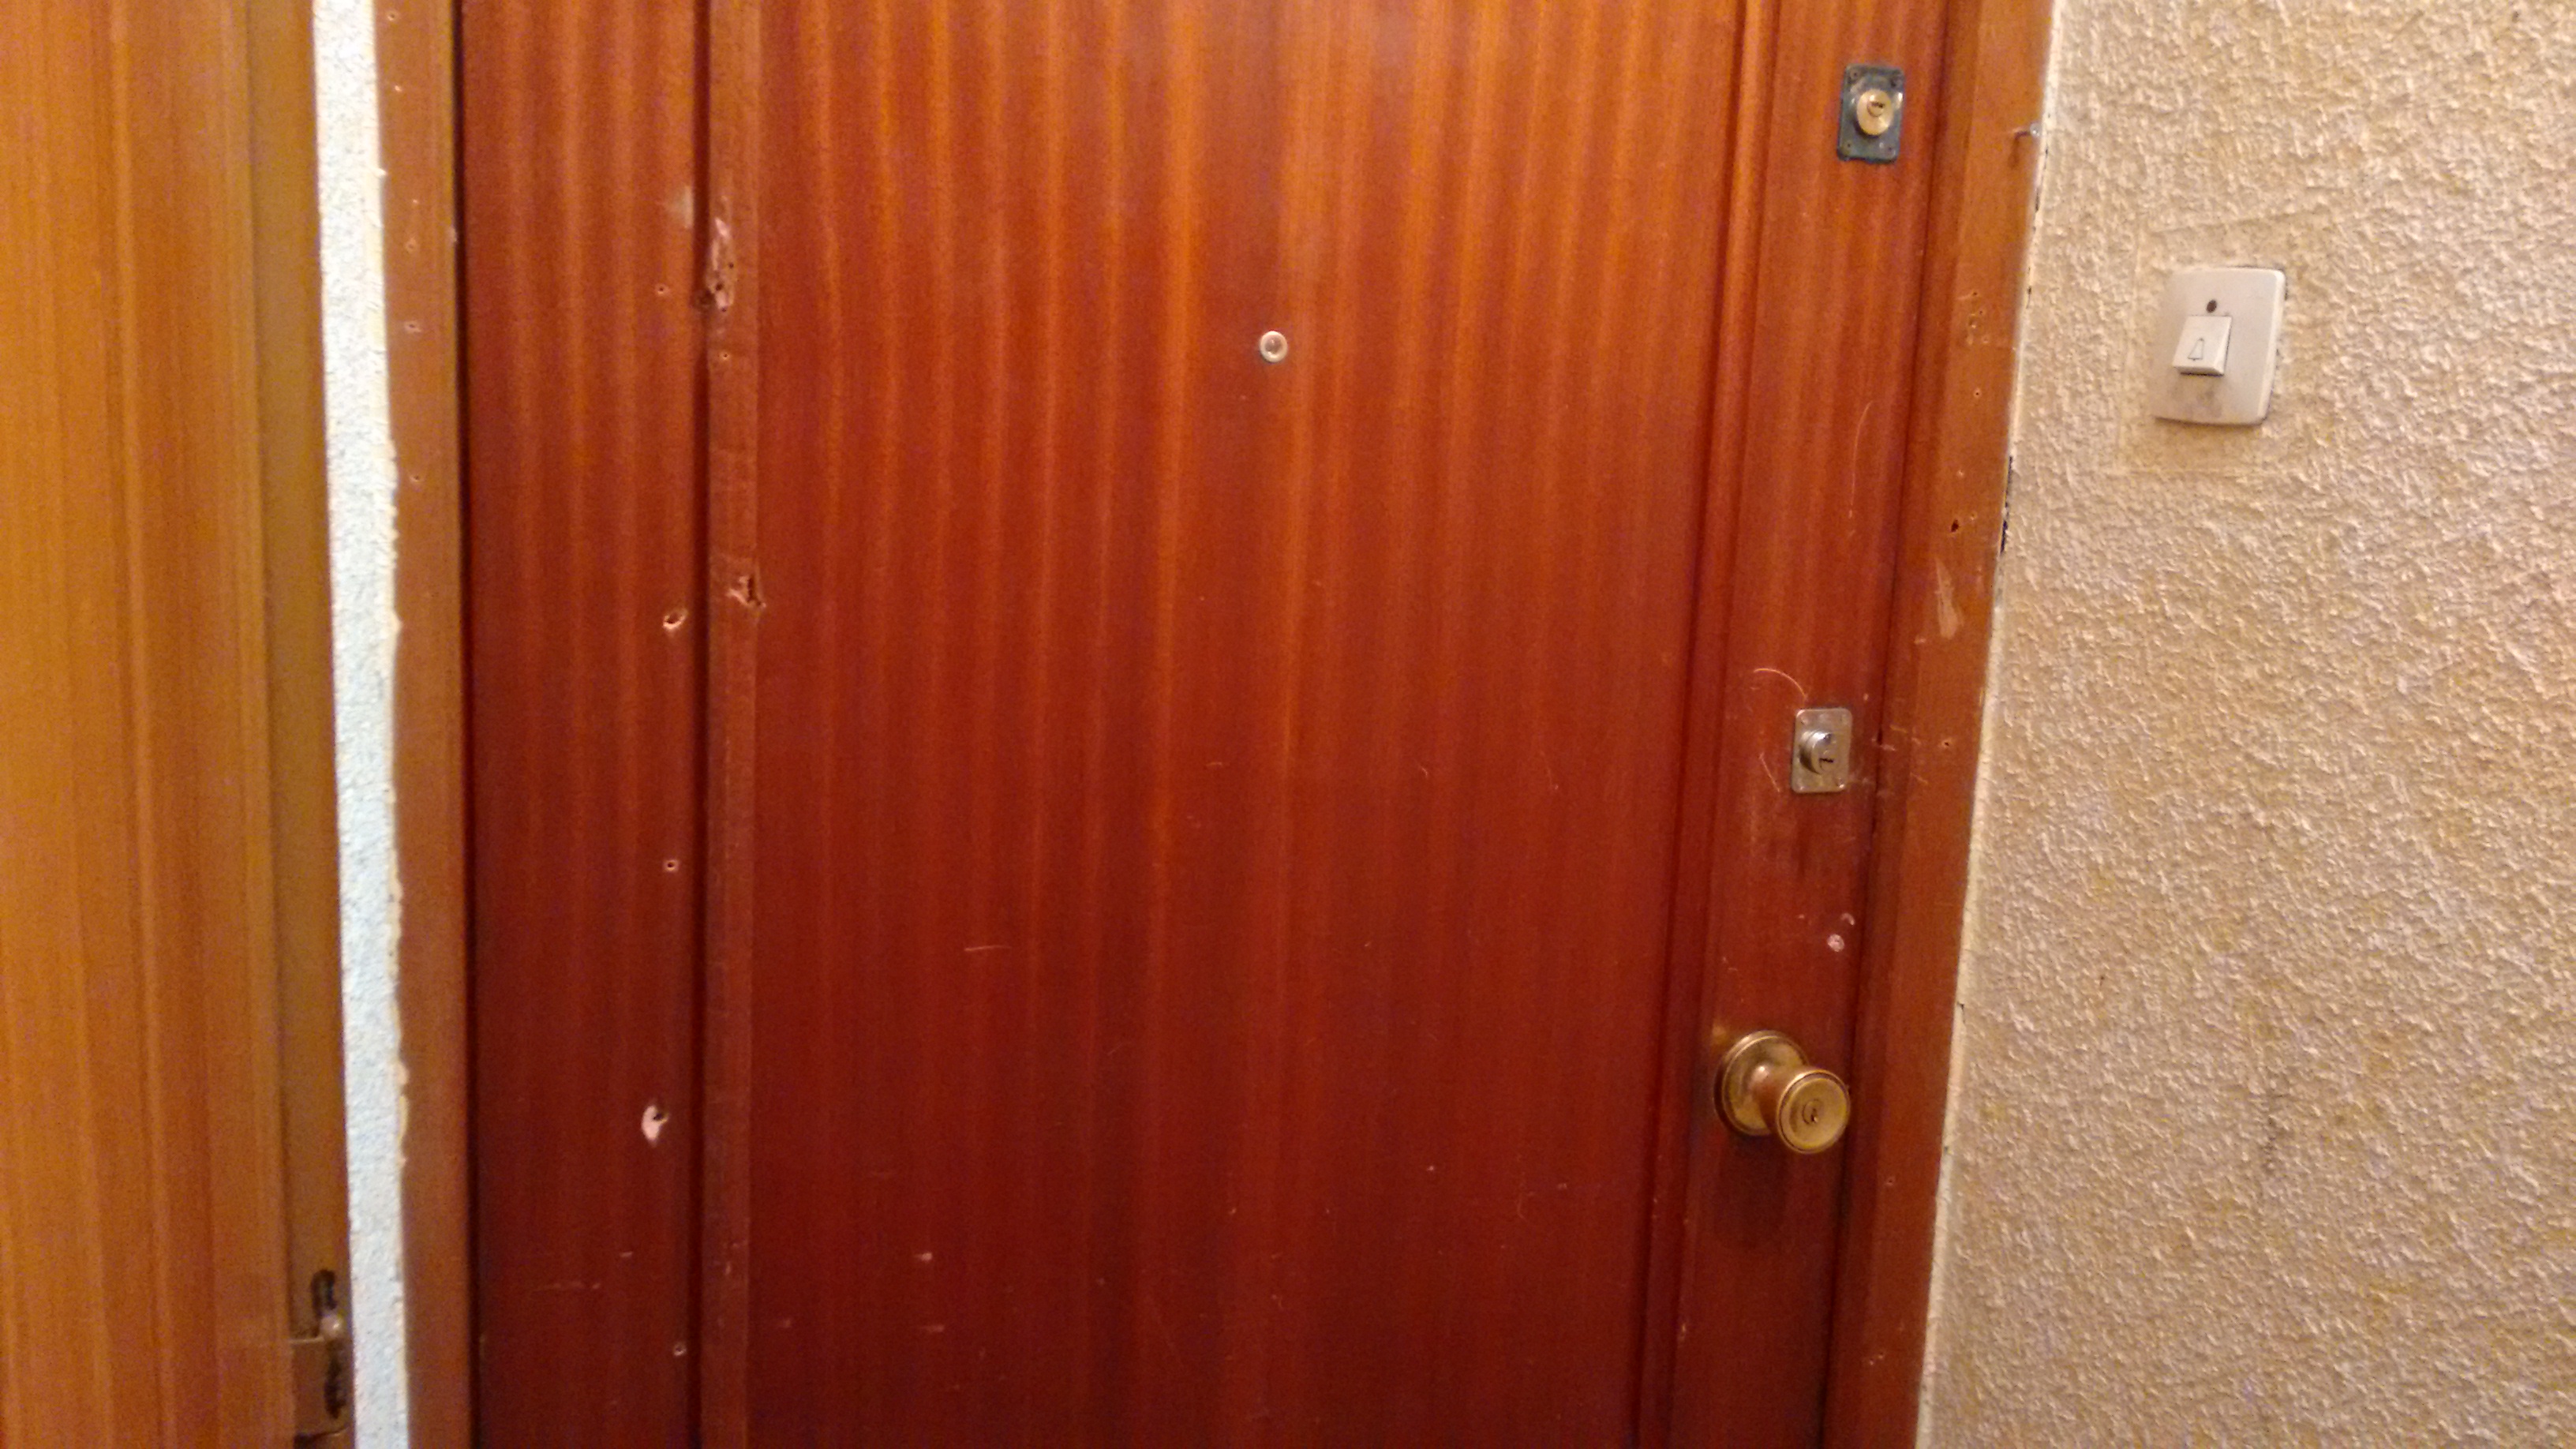 Los vecinos ha pagado hasta 5 cerraduras en puertas susceptibles de ser atacadas. (Foto: OKDIARIO)